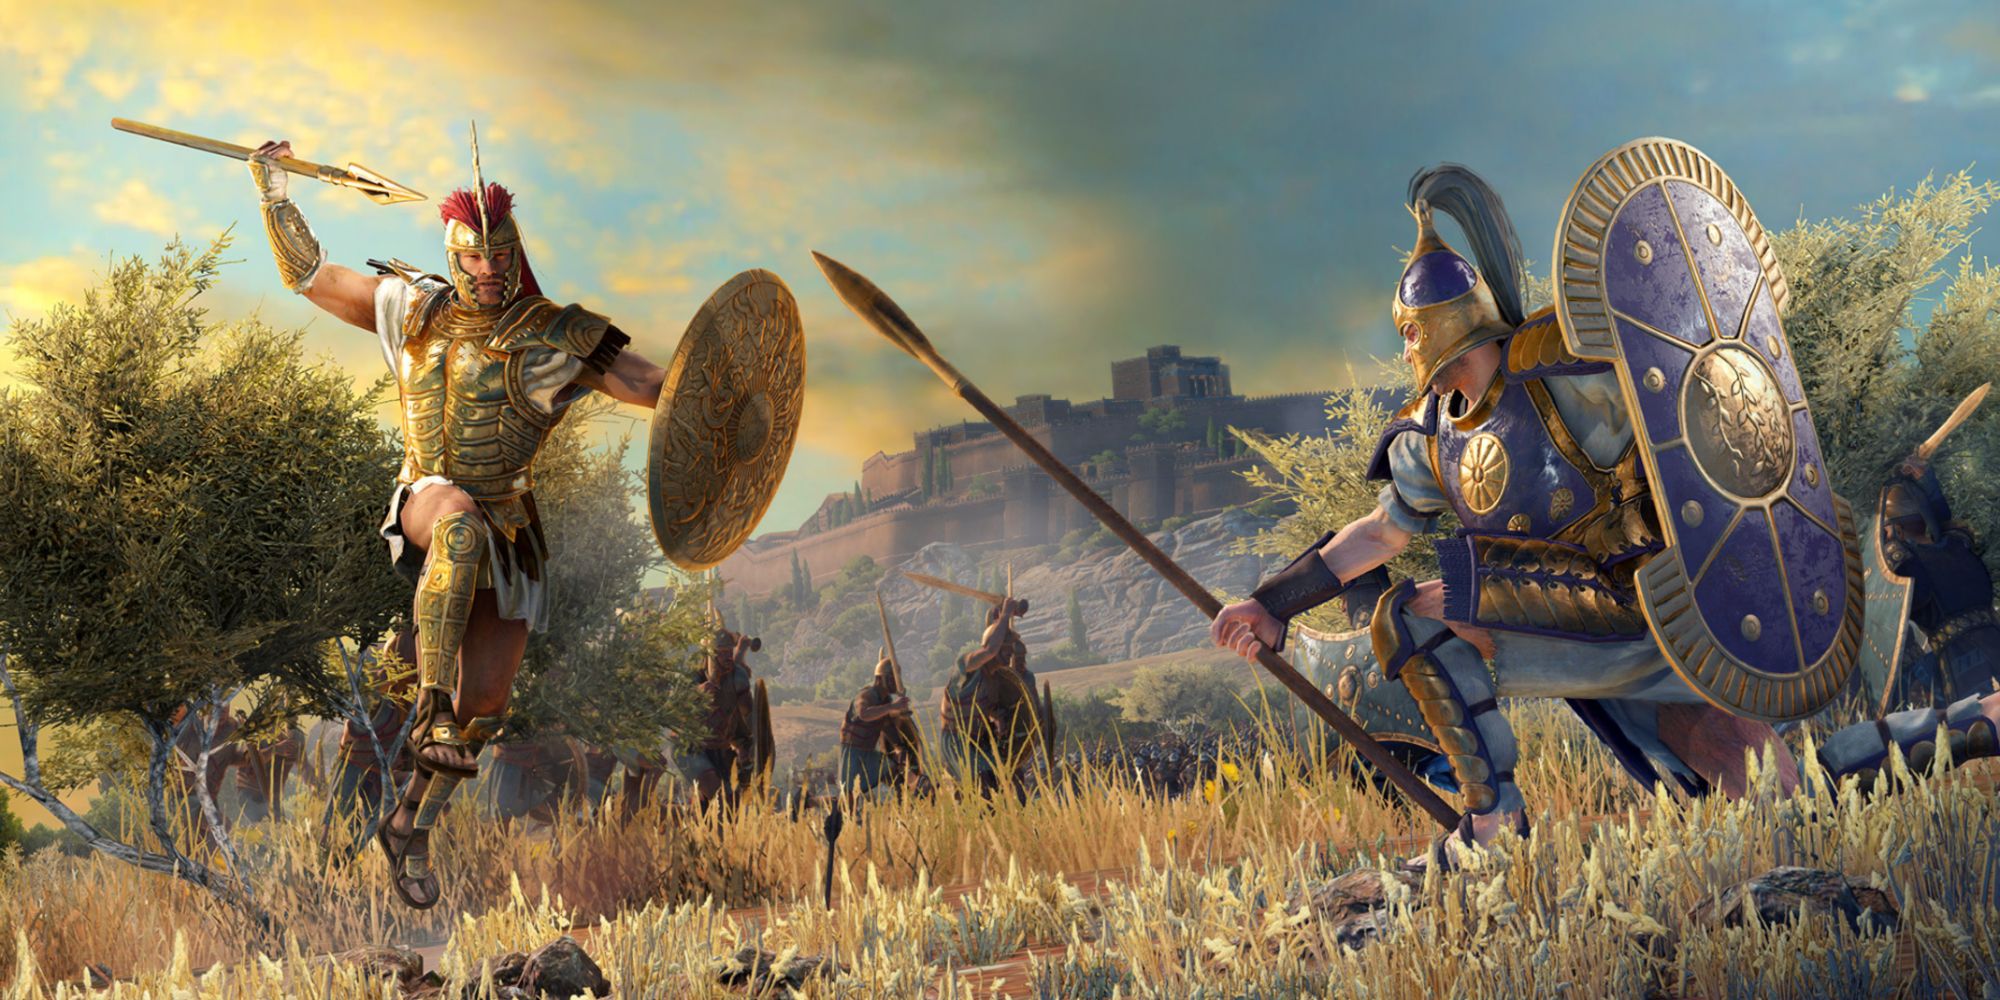 A Total War Saga Troy game image.